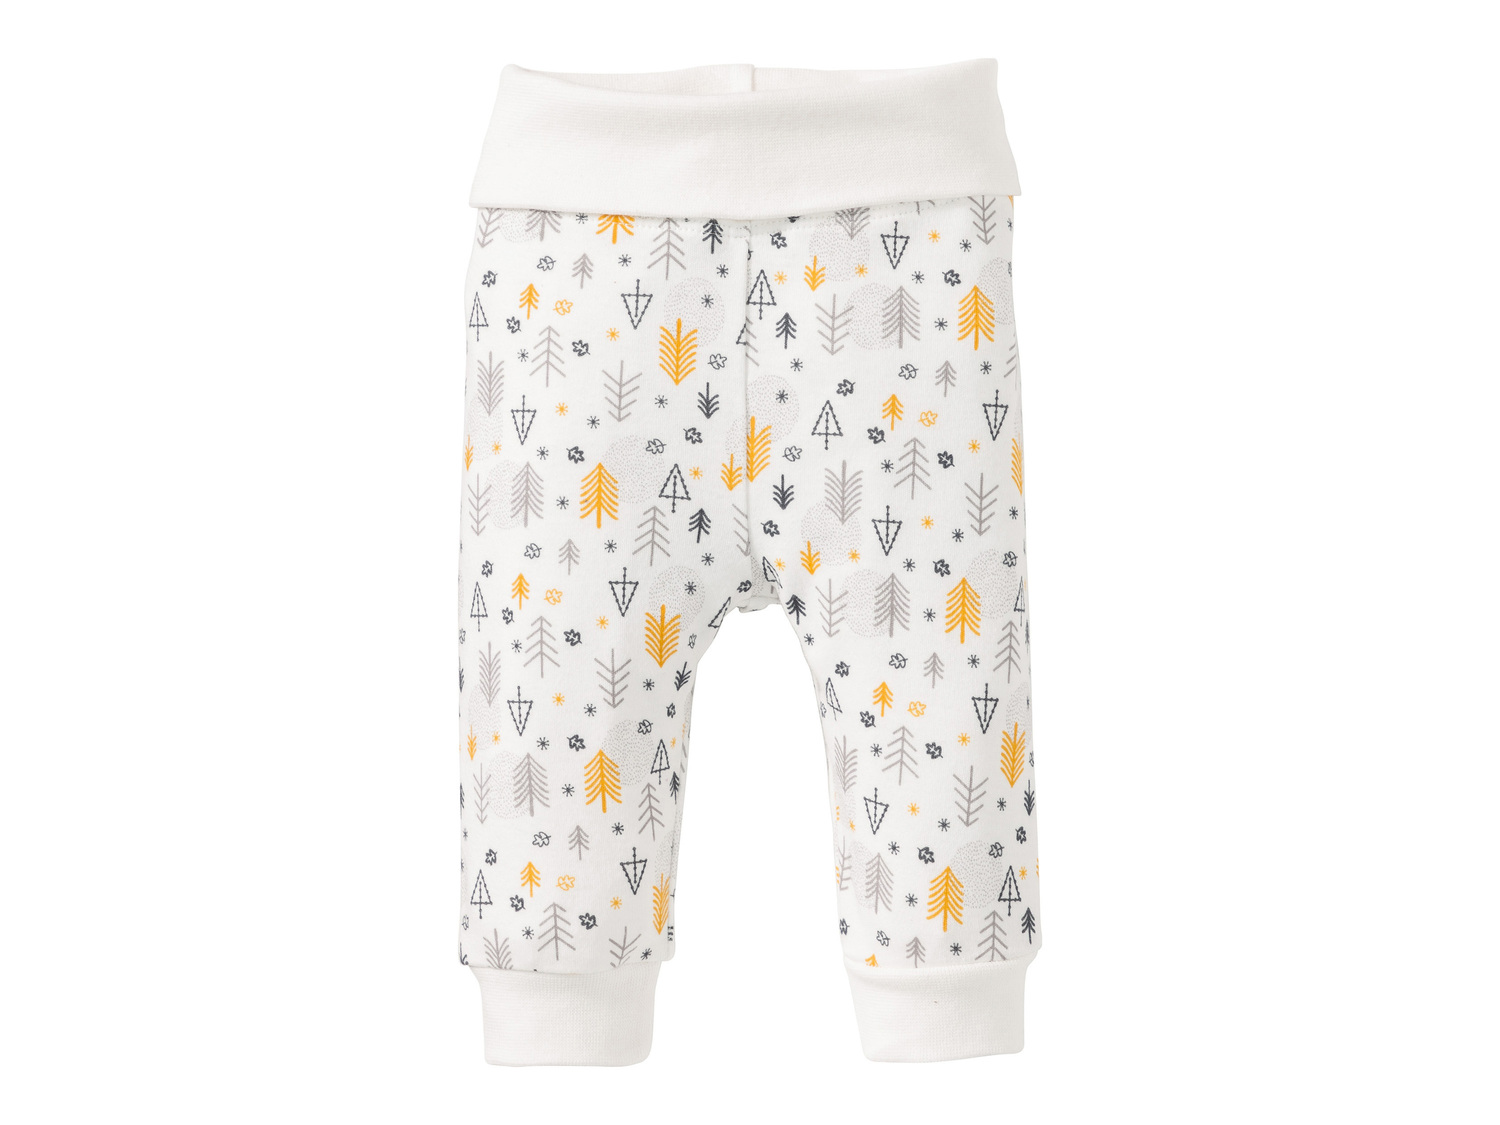 Pantaloni sportivi da neonato, 2 pezzi Lupilu, prezzo 3.99 &#8364; 
- Comodo ...